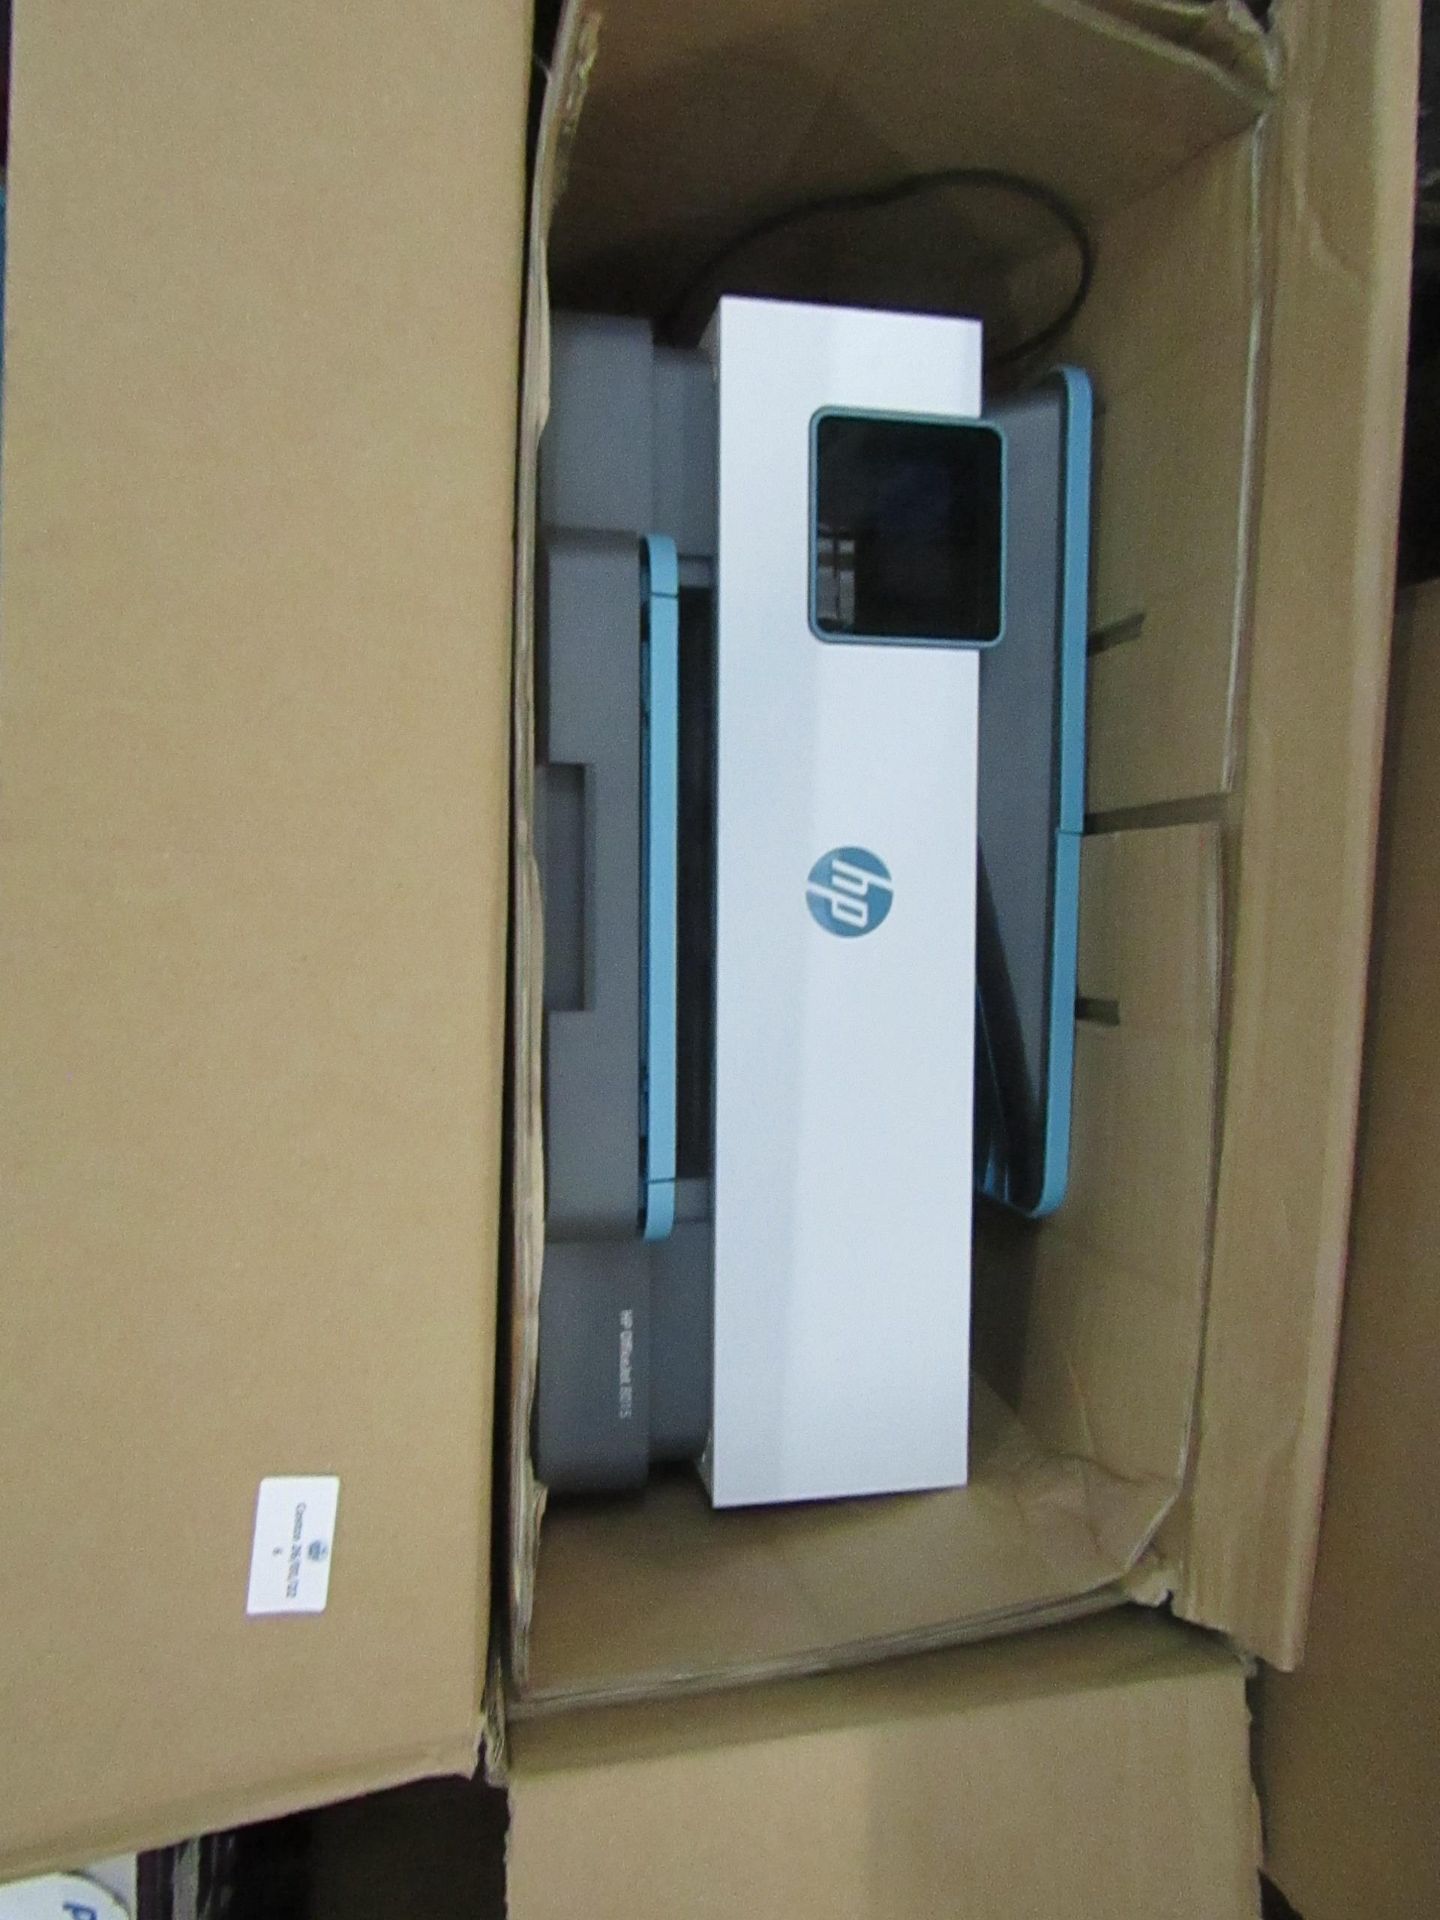 Hp Office Jet 8015 printer, unchecked in non original box